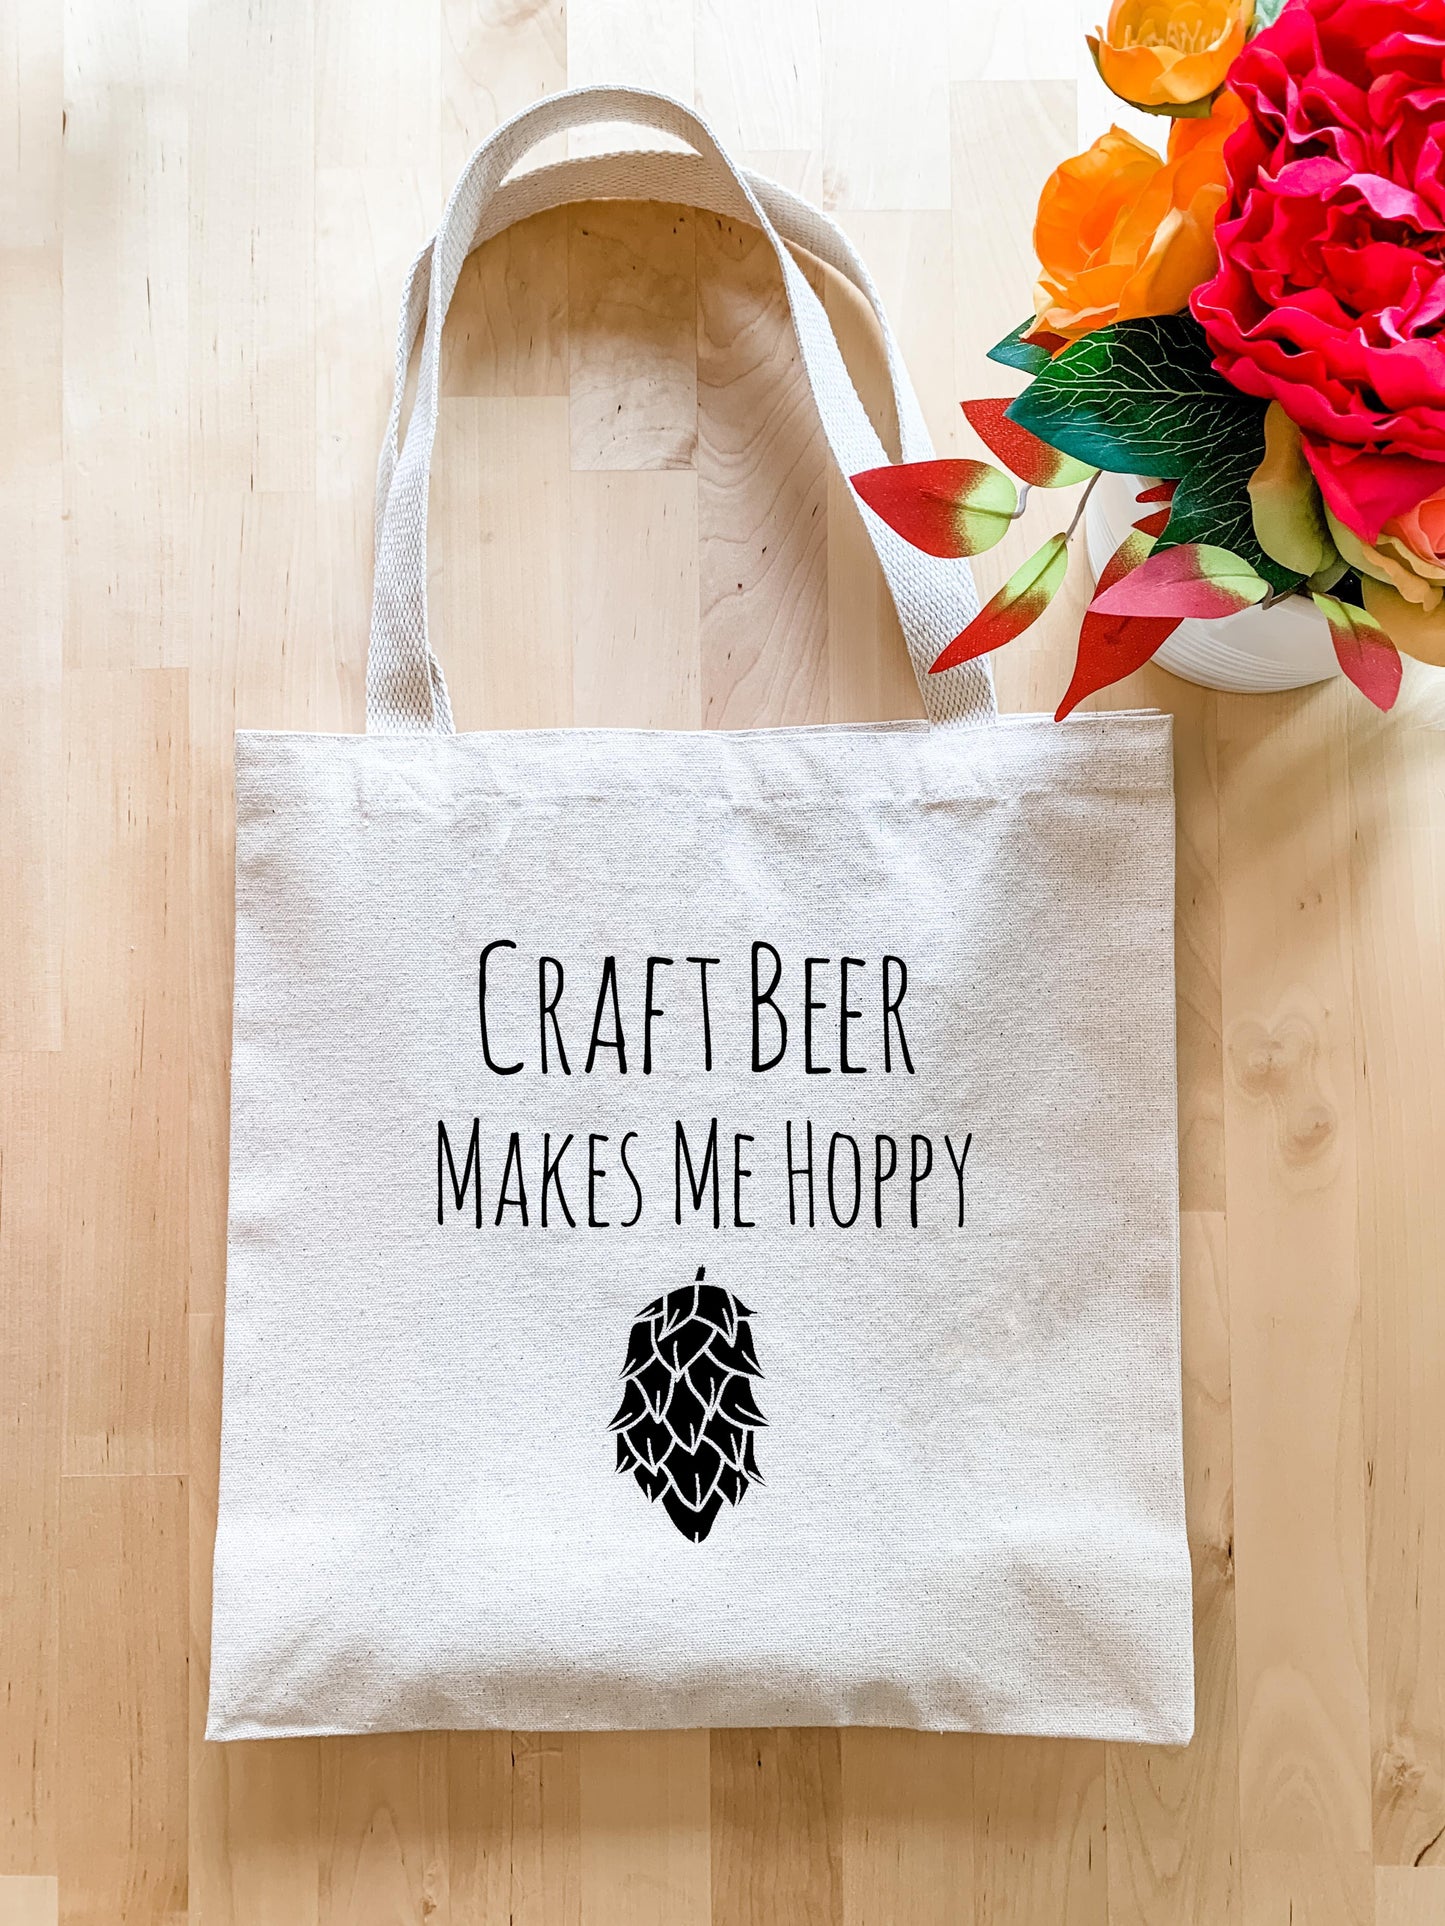 Craft Beer Makes Me Hoppy - Tote Bag - MoonlightMakers